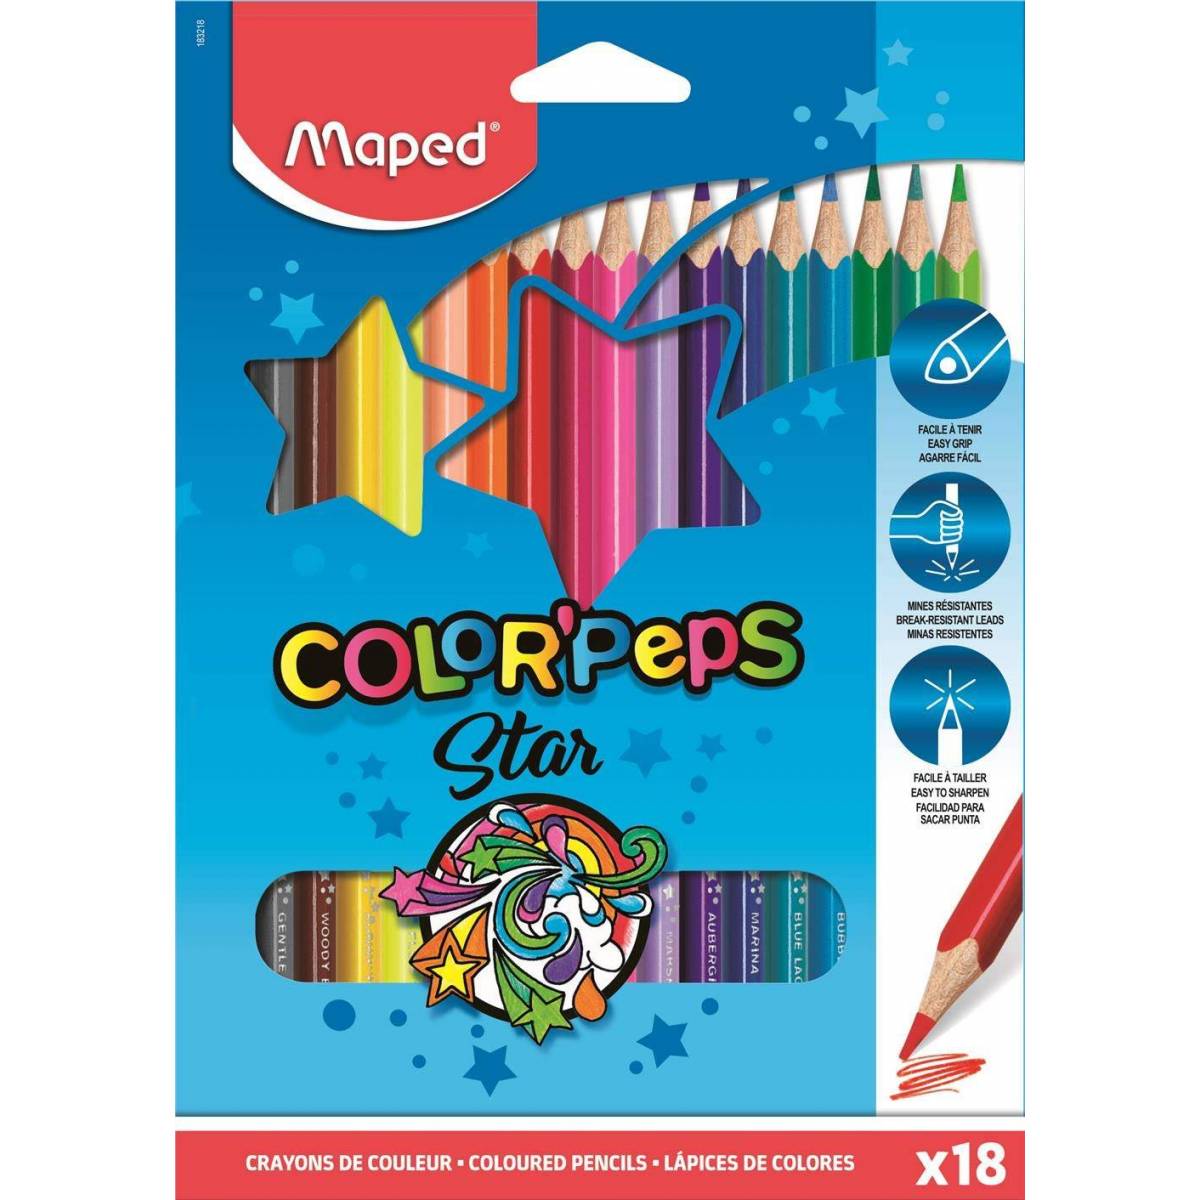 Crayons de Couleur Maped Color'peps Star x18